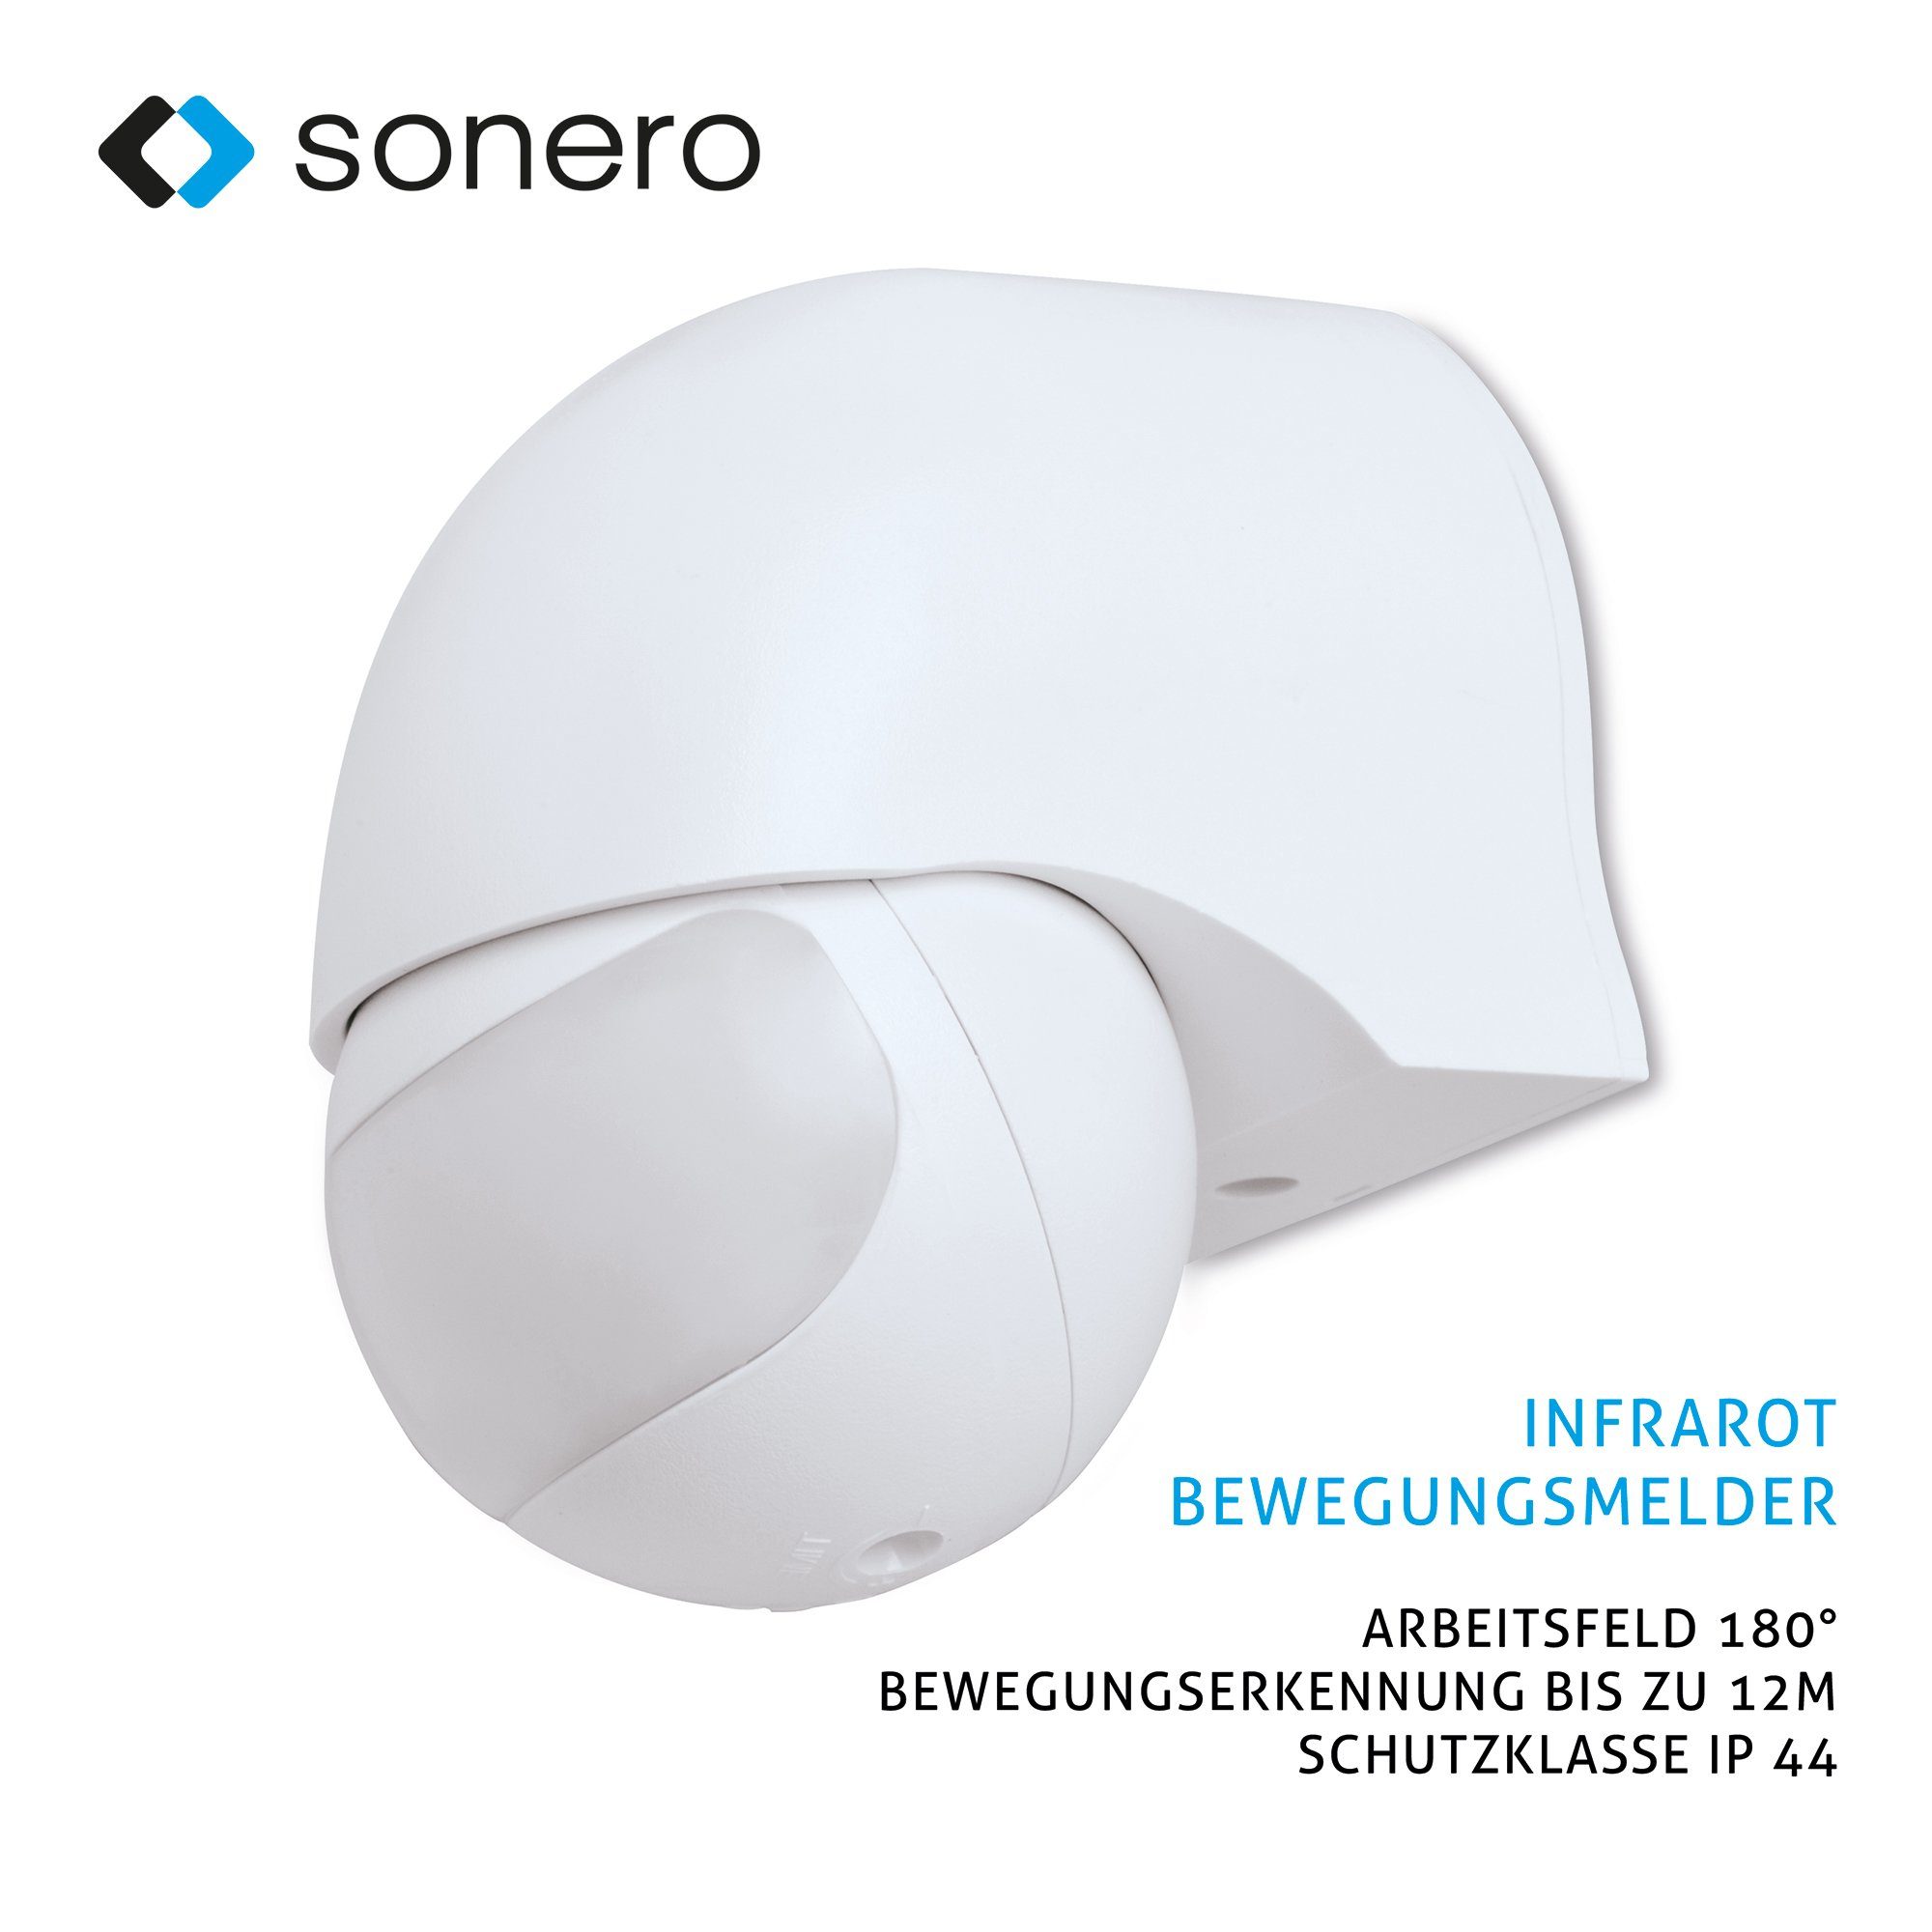 sonero Bewegungsmelder Sonero Infrarot-Bewegungsmelder X-IM010 - Innen- / Außenmontage, weiß